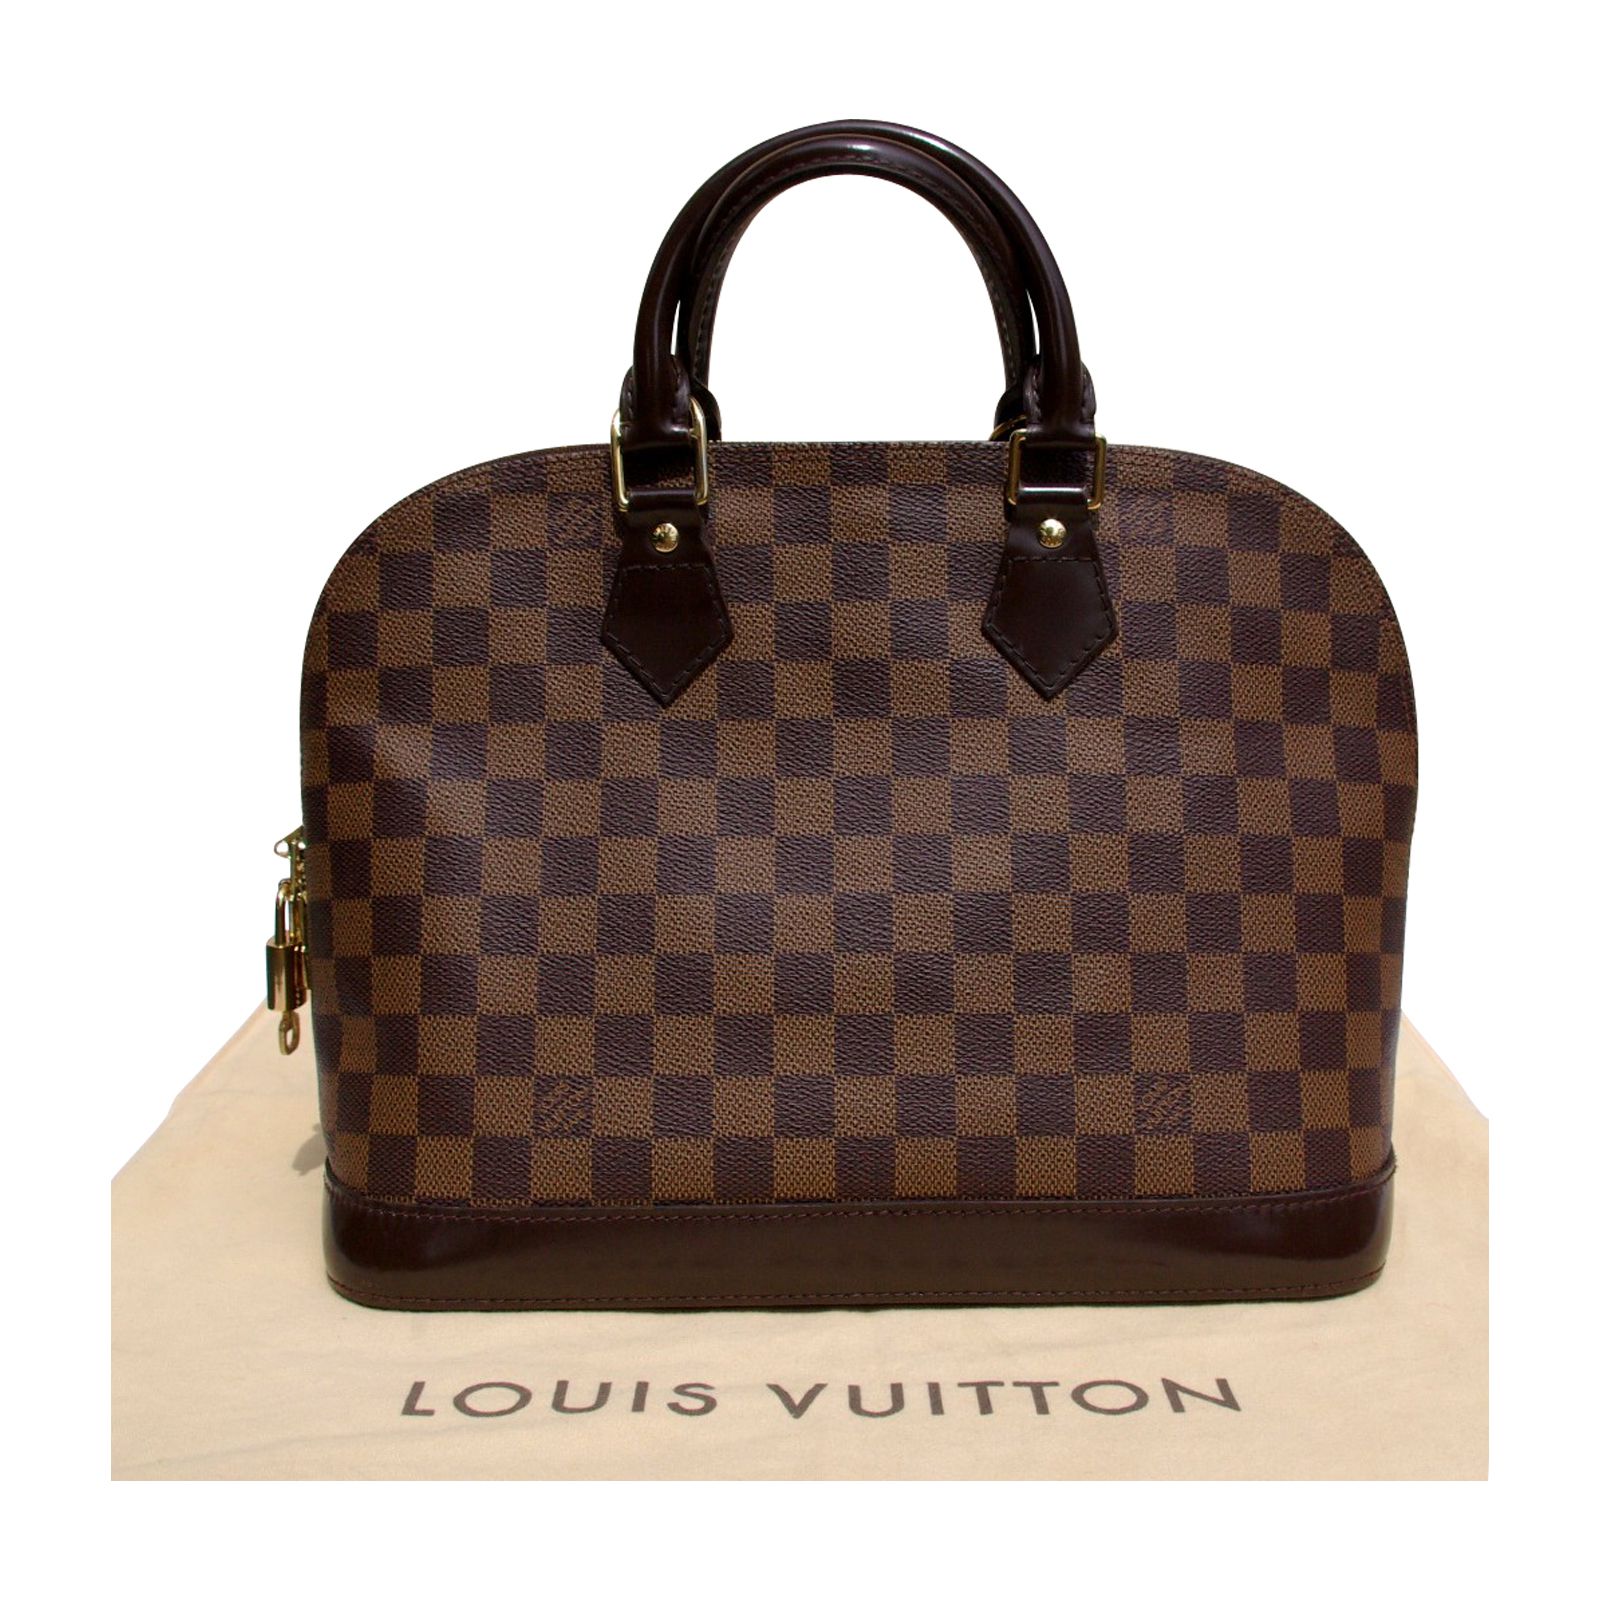 Louis Vuitton Outlet Handbags Online HD Wallpaper